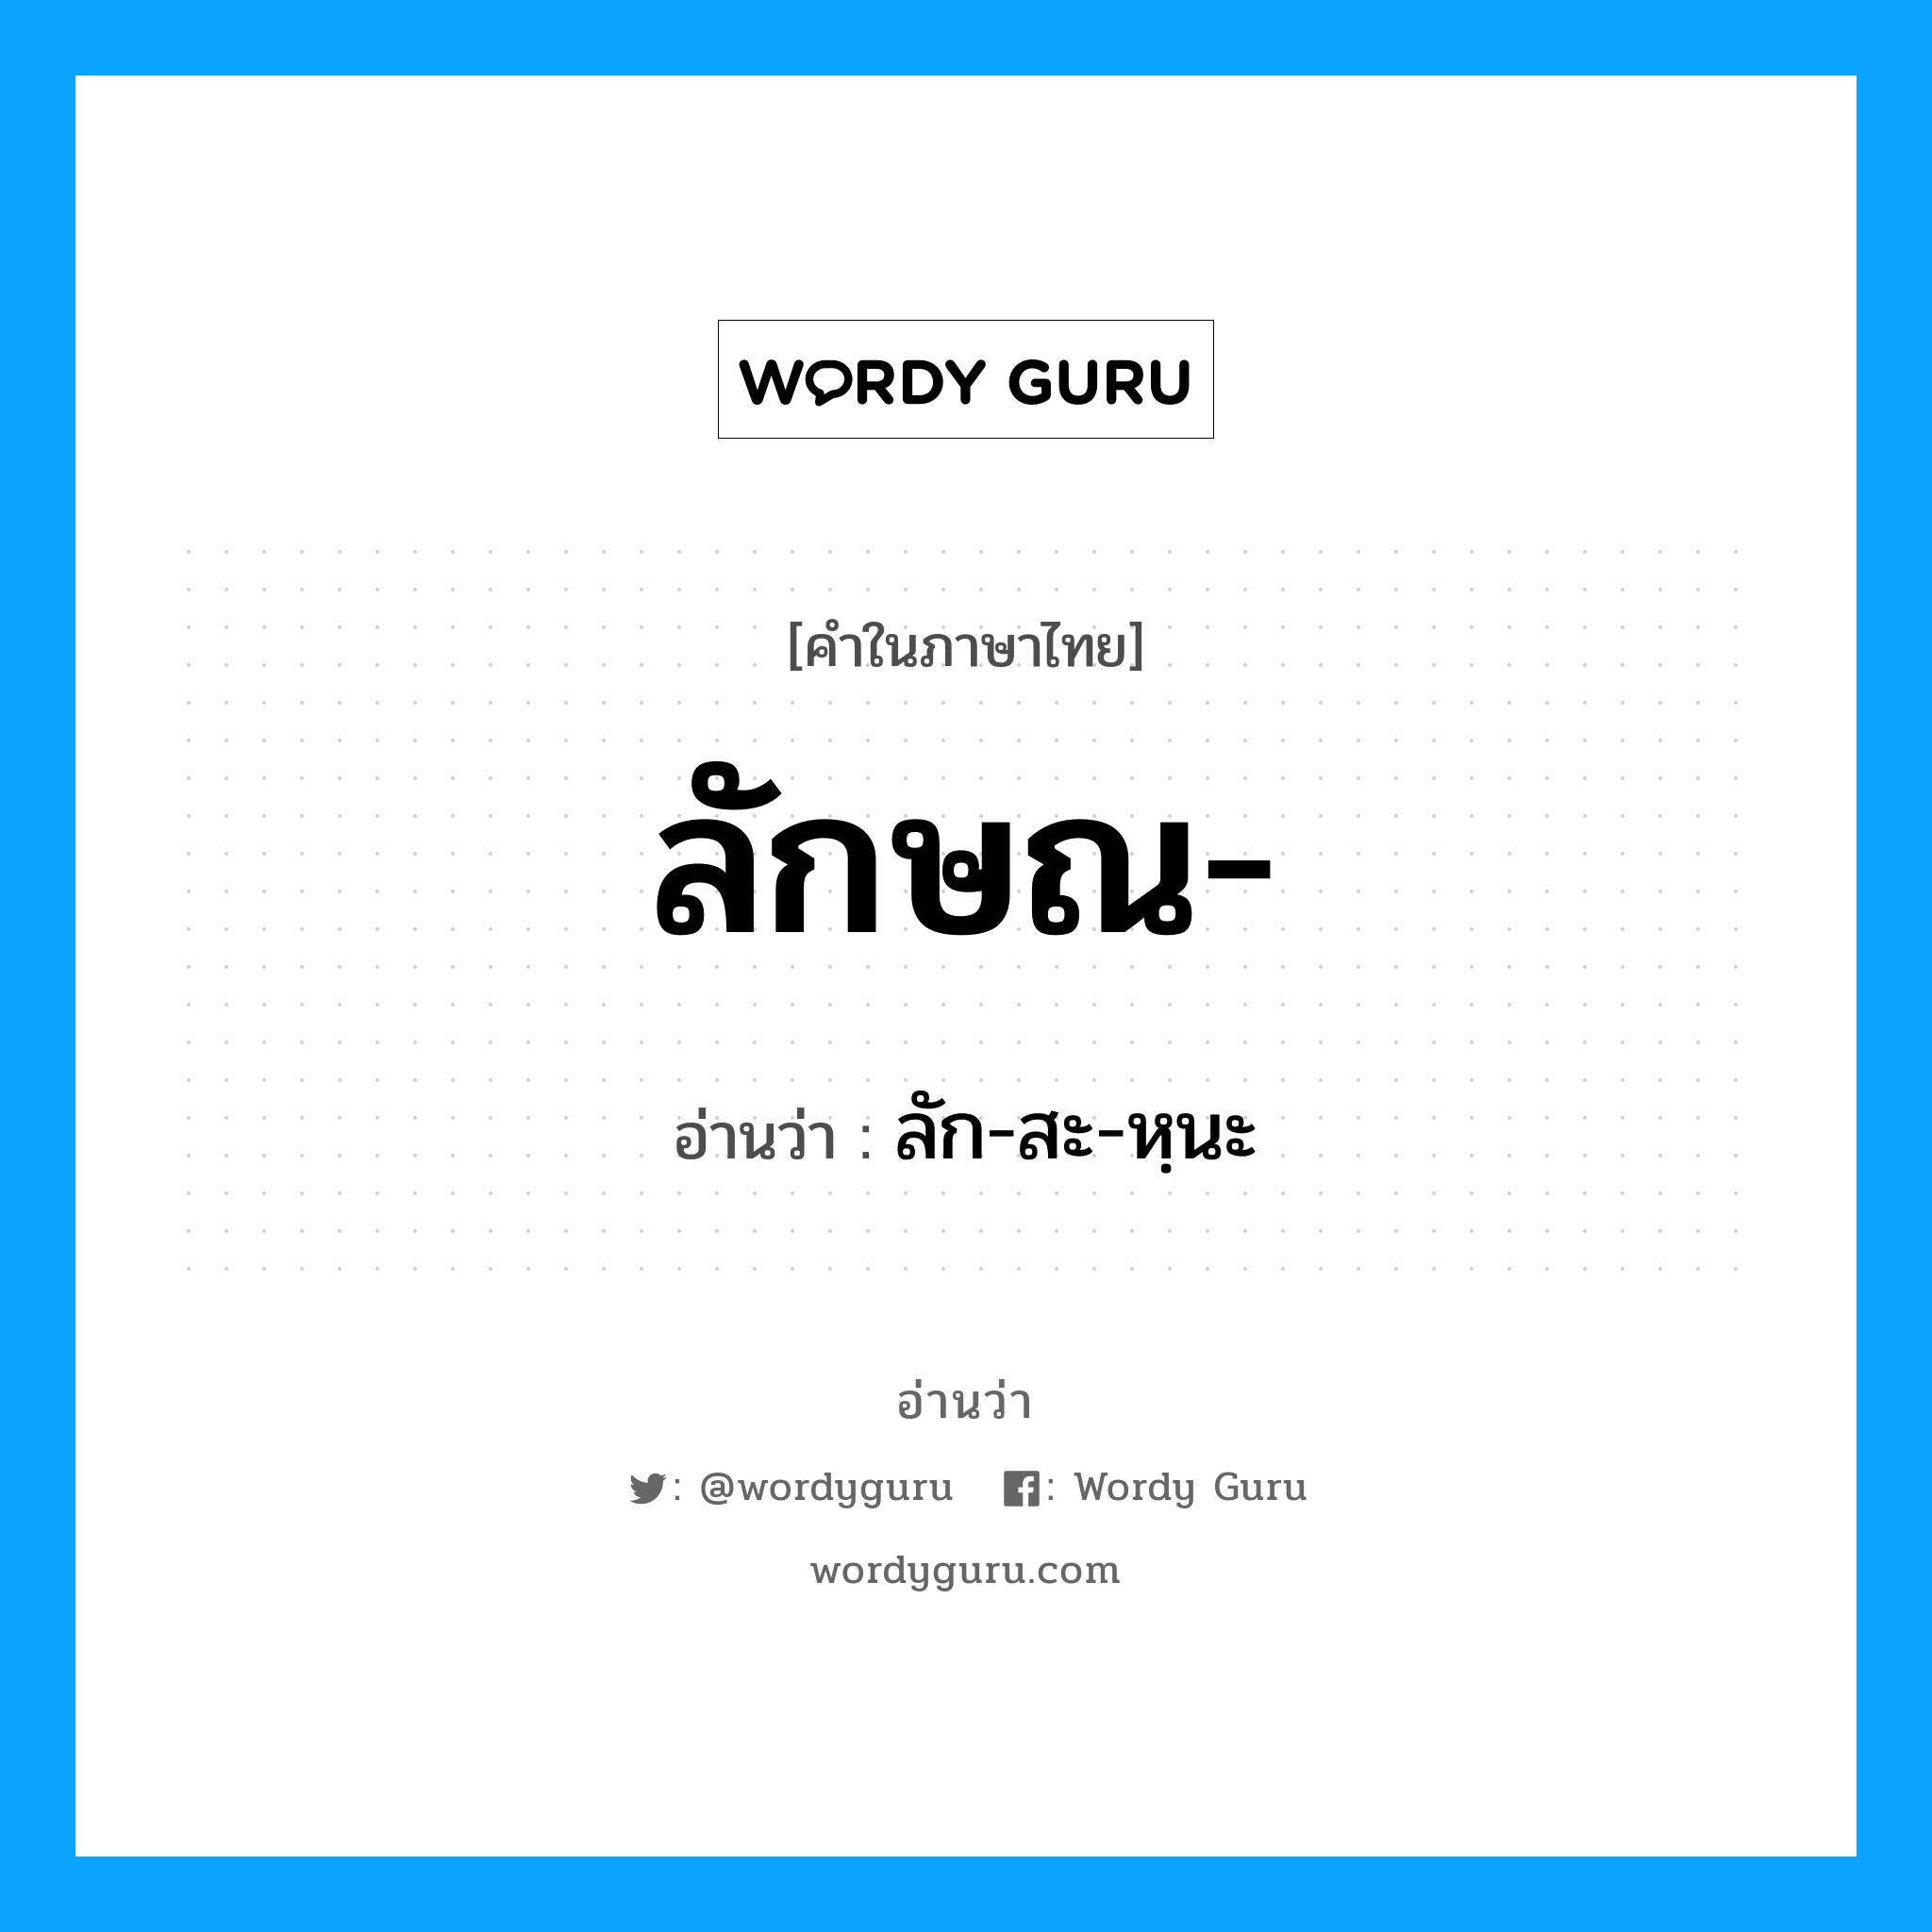 ลักษณ อ่านว่า?, คำในภาษาไทย ลักษณ- อ่านว่า ลัก-สะ-หฺนะ